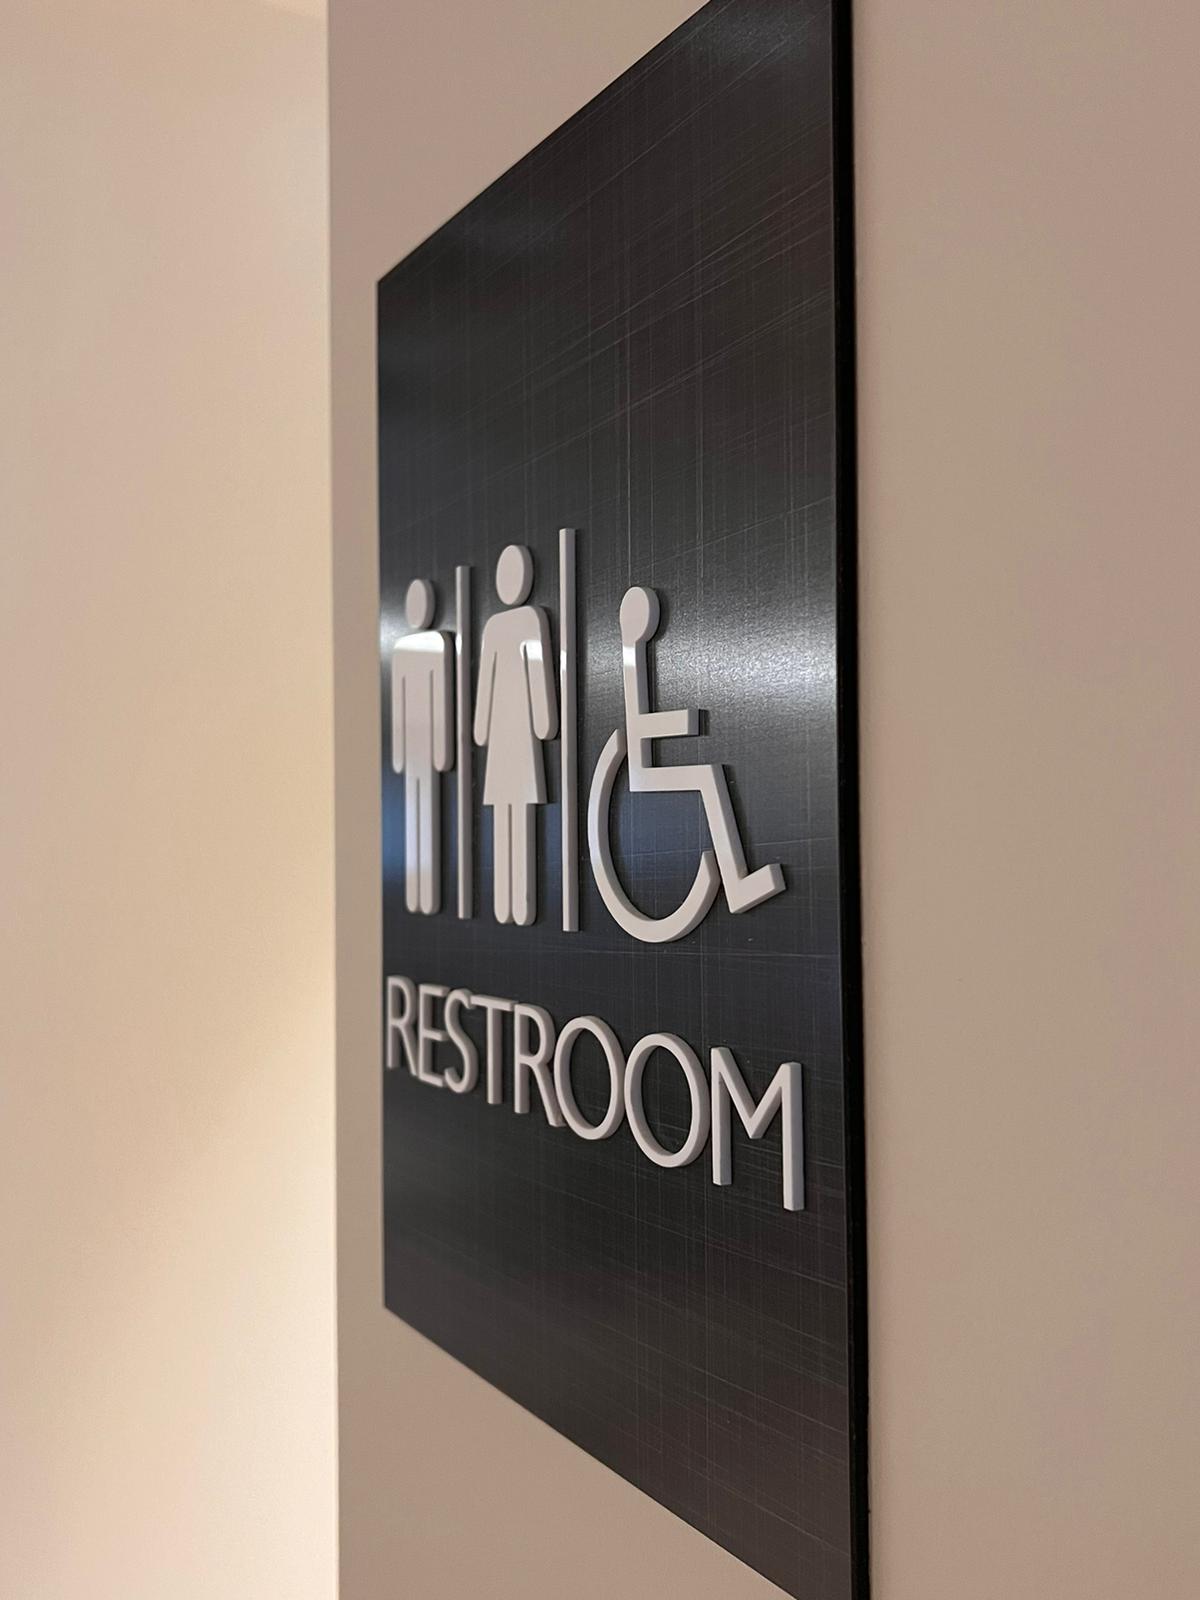 way finding restroom hotel door MetroXL